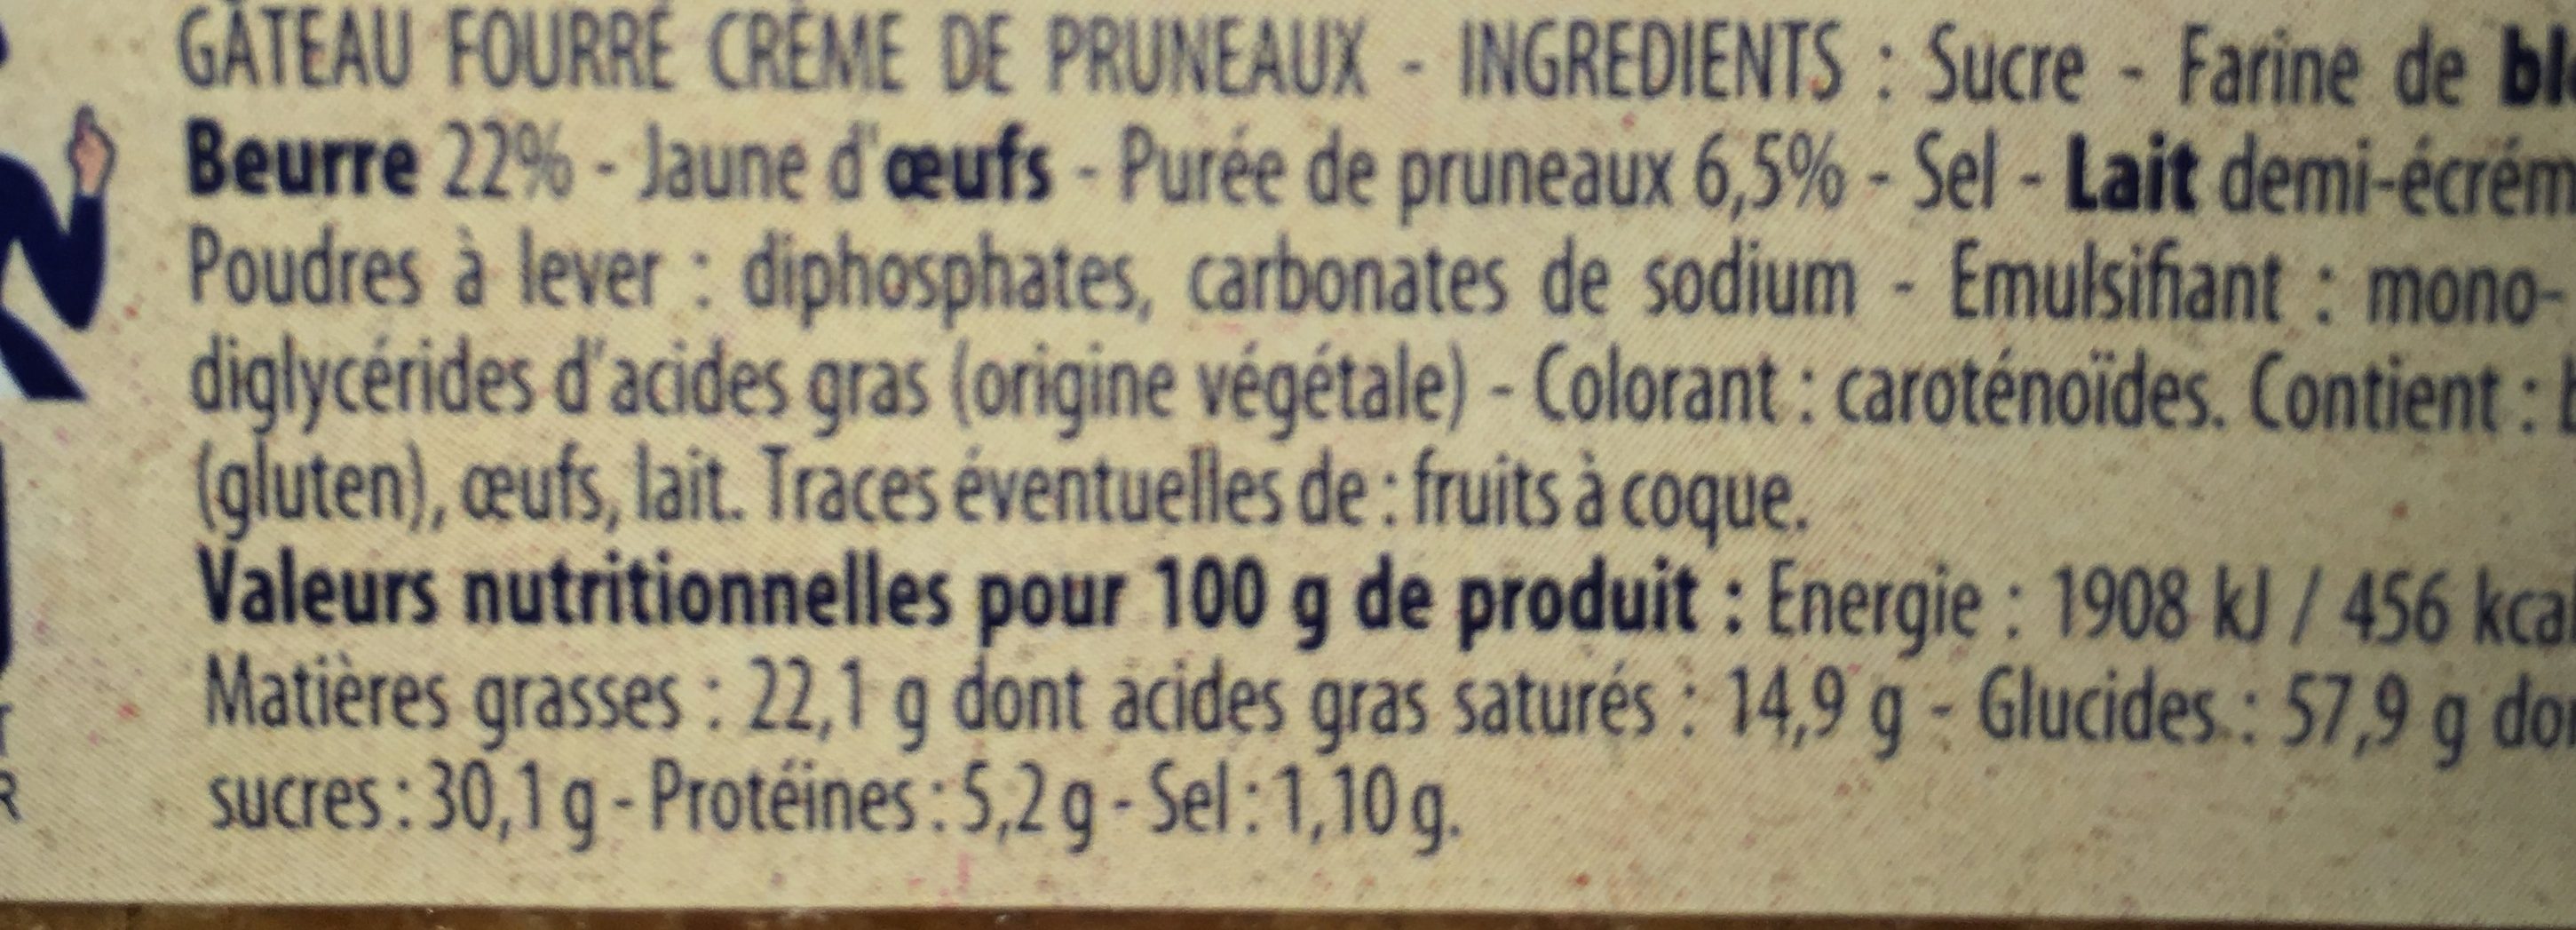 Gâteau Breton Crème de Pruneaux - Ingredients - fr